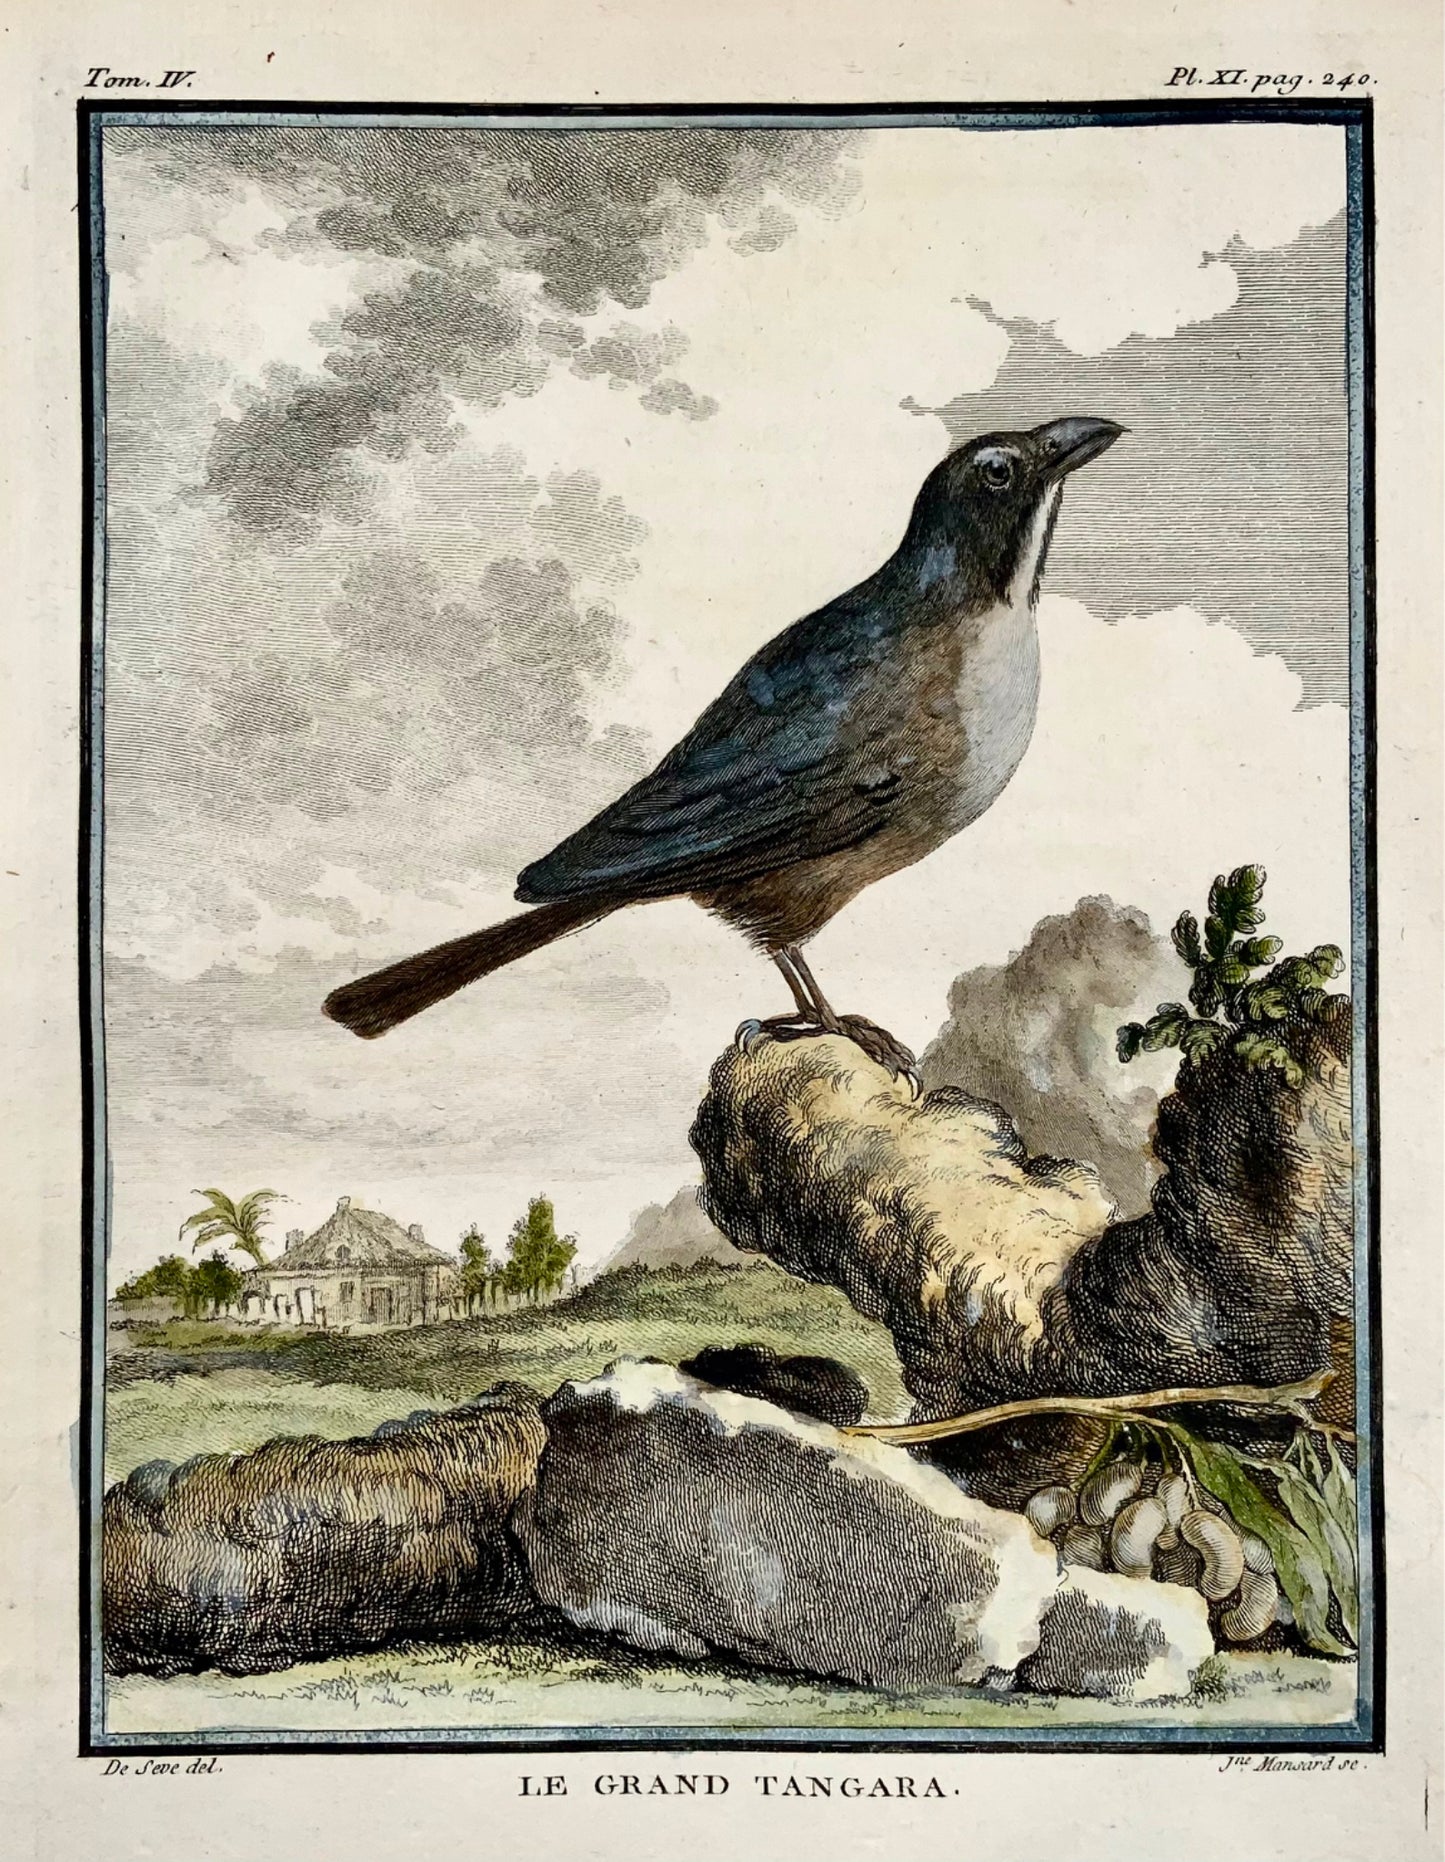 1779 de Seve - TANGARA - Ornithology - 4to Large Edn engraving